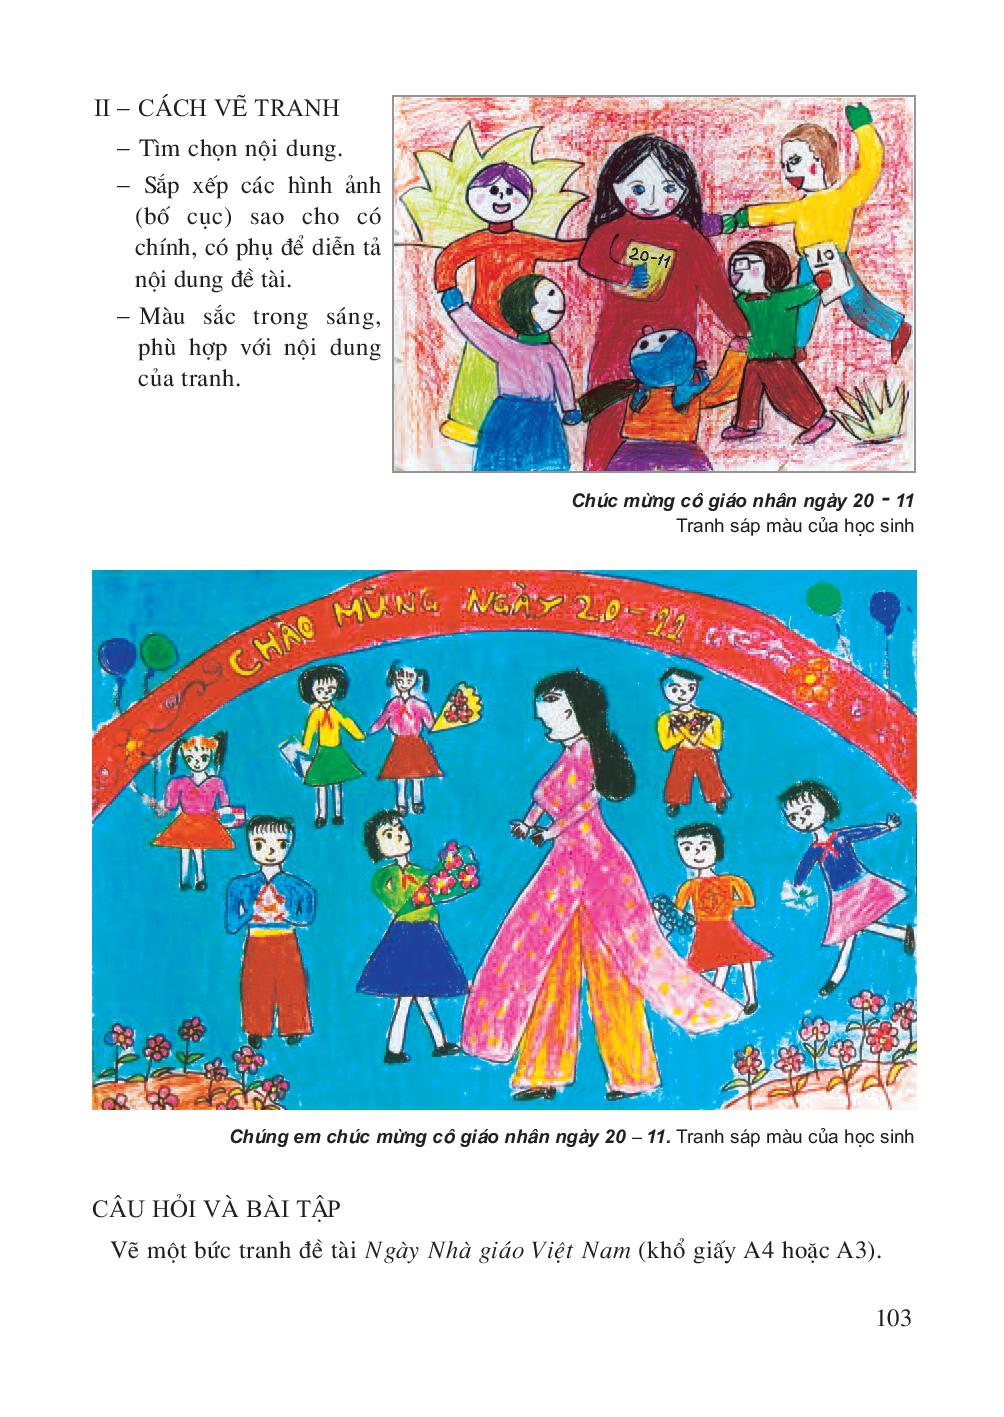 Đề tài Ngày Nhà giáo Việt Nam là một chủ đề rất phong phú và đa dạng. Hãy cùng khám phá những bức tranh vẽ độc đáo, tươi sáng và đầy cảm hứng về Nhà giáo Việt Nam để tôn vinh tình yêu và sự trân trọng đối với các thầy cô giáo. Hãy cùng chúc mừng Ngày Nhà giáo Việt Nam!